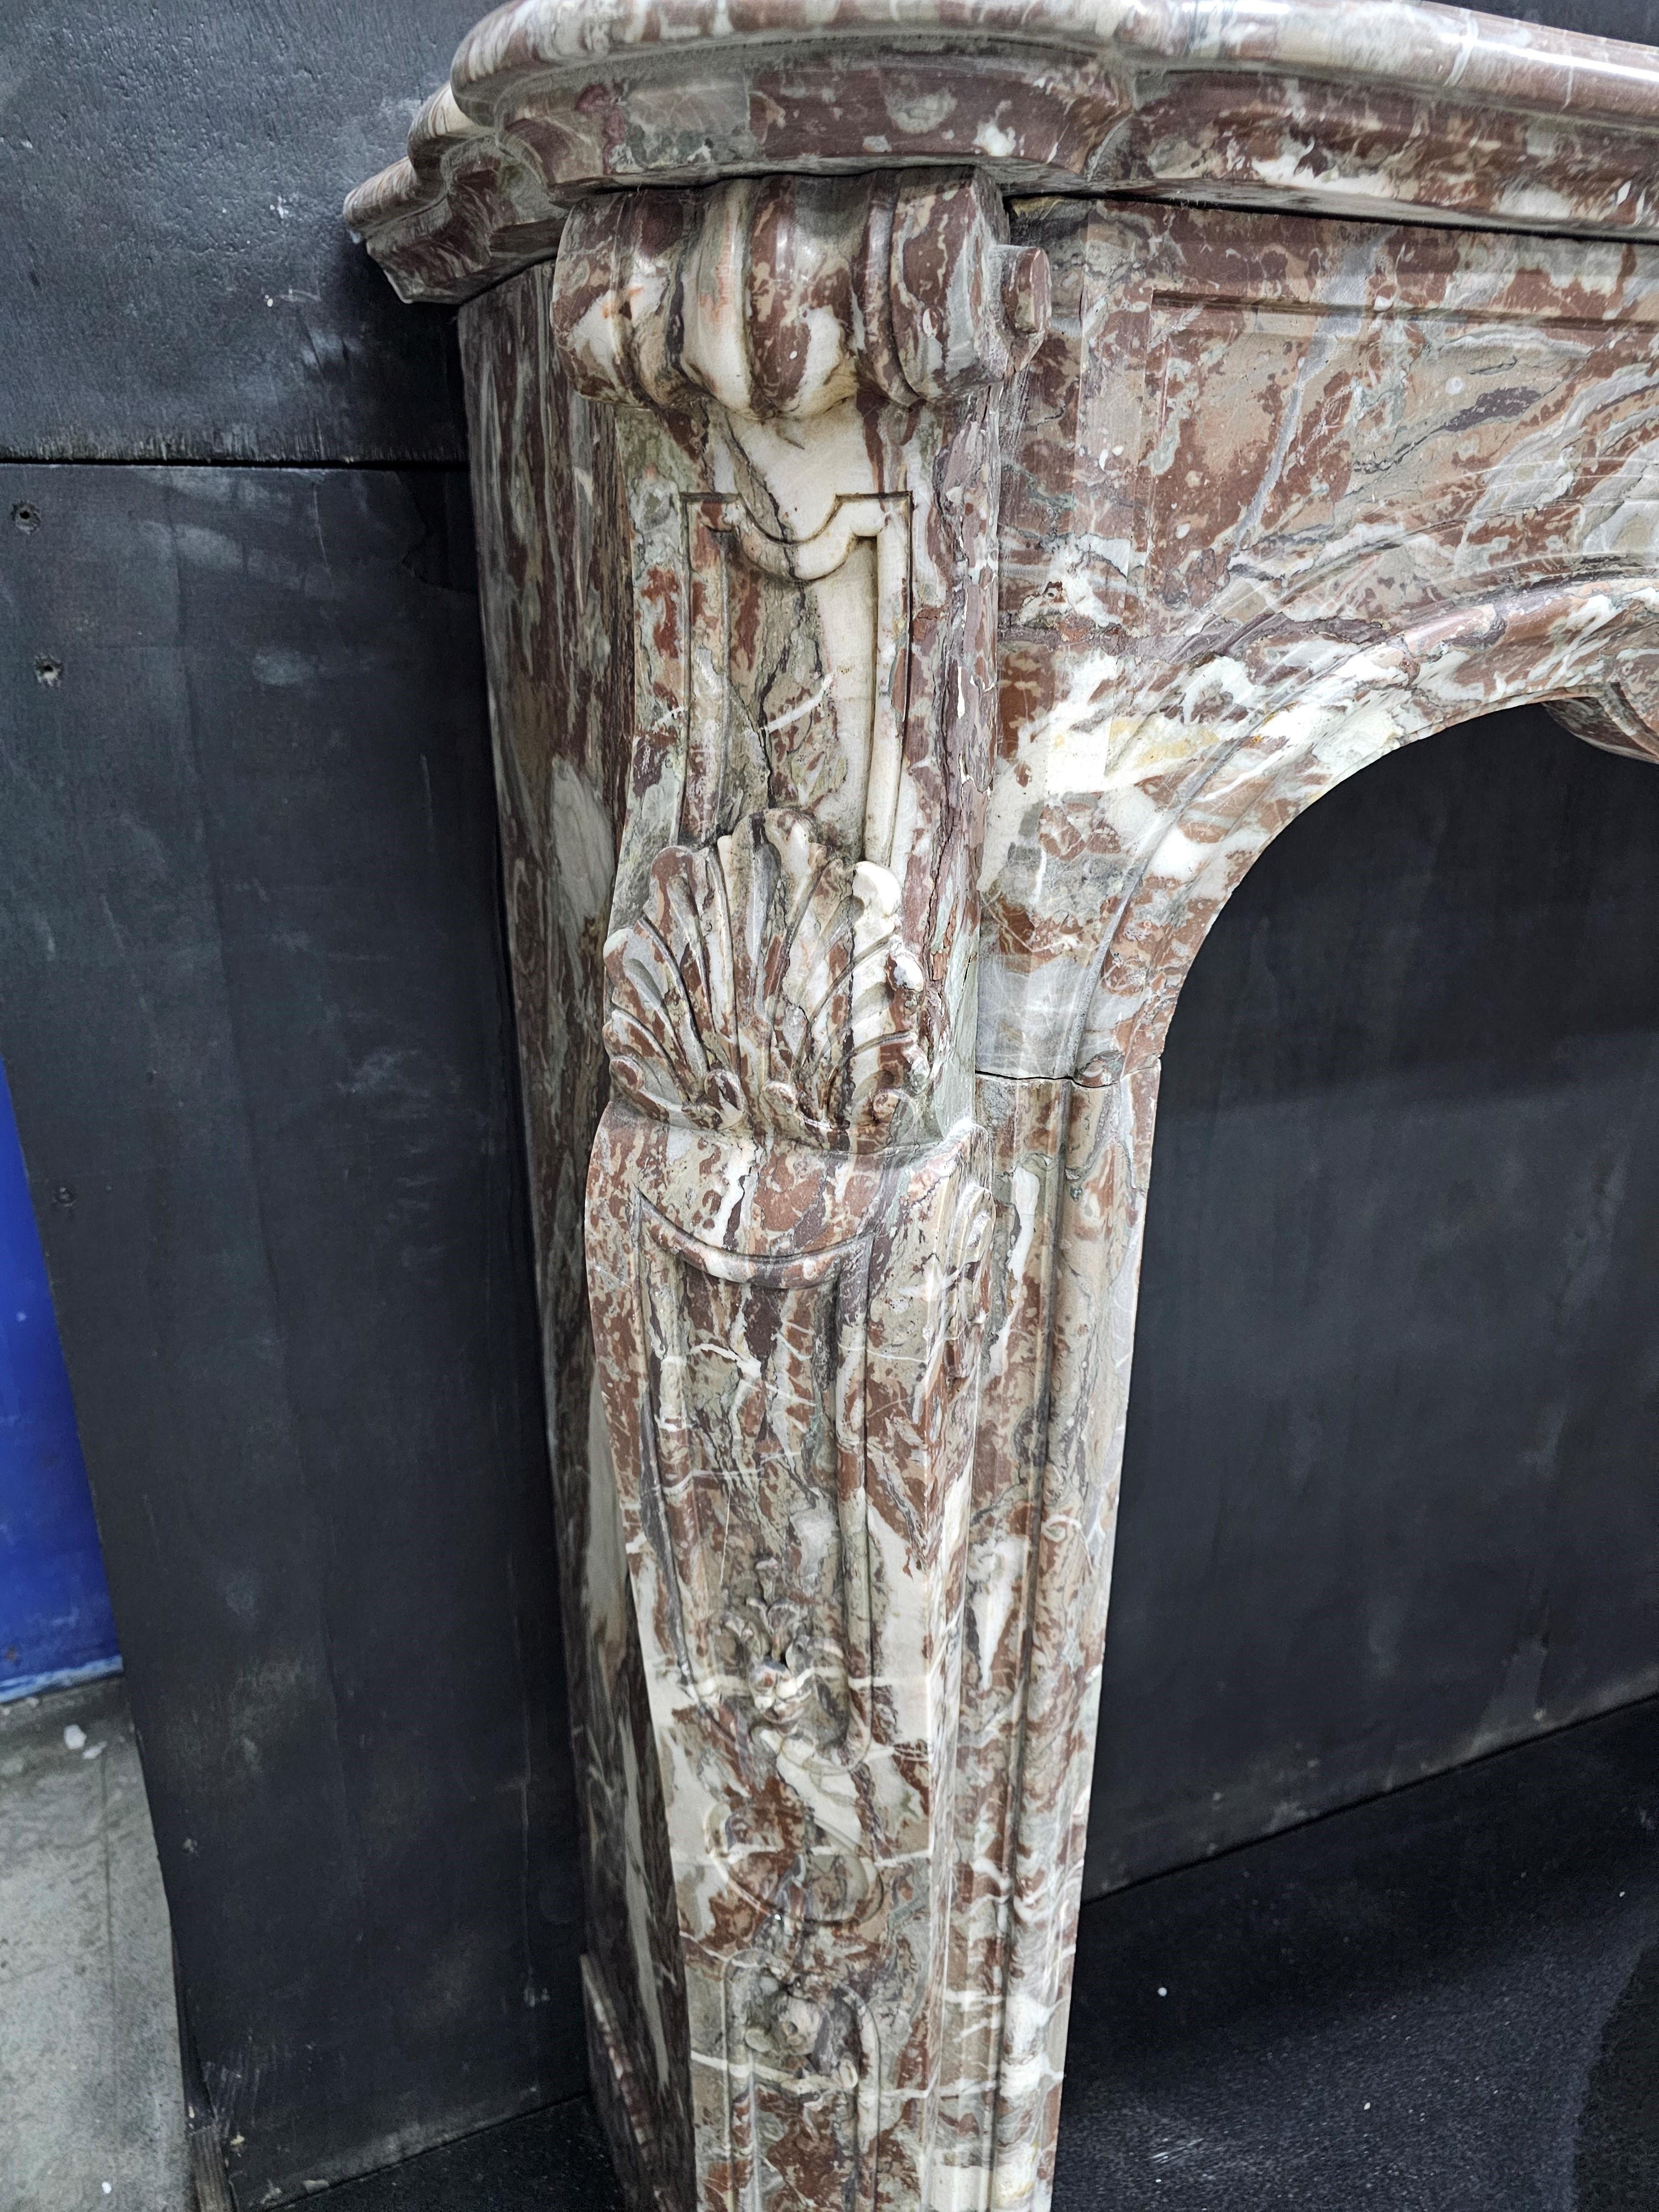 Cheminée française du XIXe siècle sculptée en Arabescato Orobico Rosso dans le style Louis XV, avec une frise serpentine présentant un cartouche central sculpté et des jambages sculptés en biais.

Encombrement : 67 